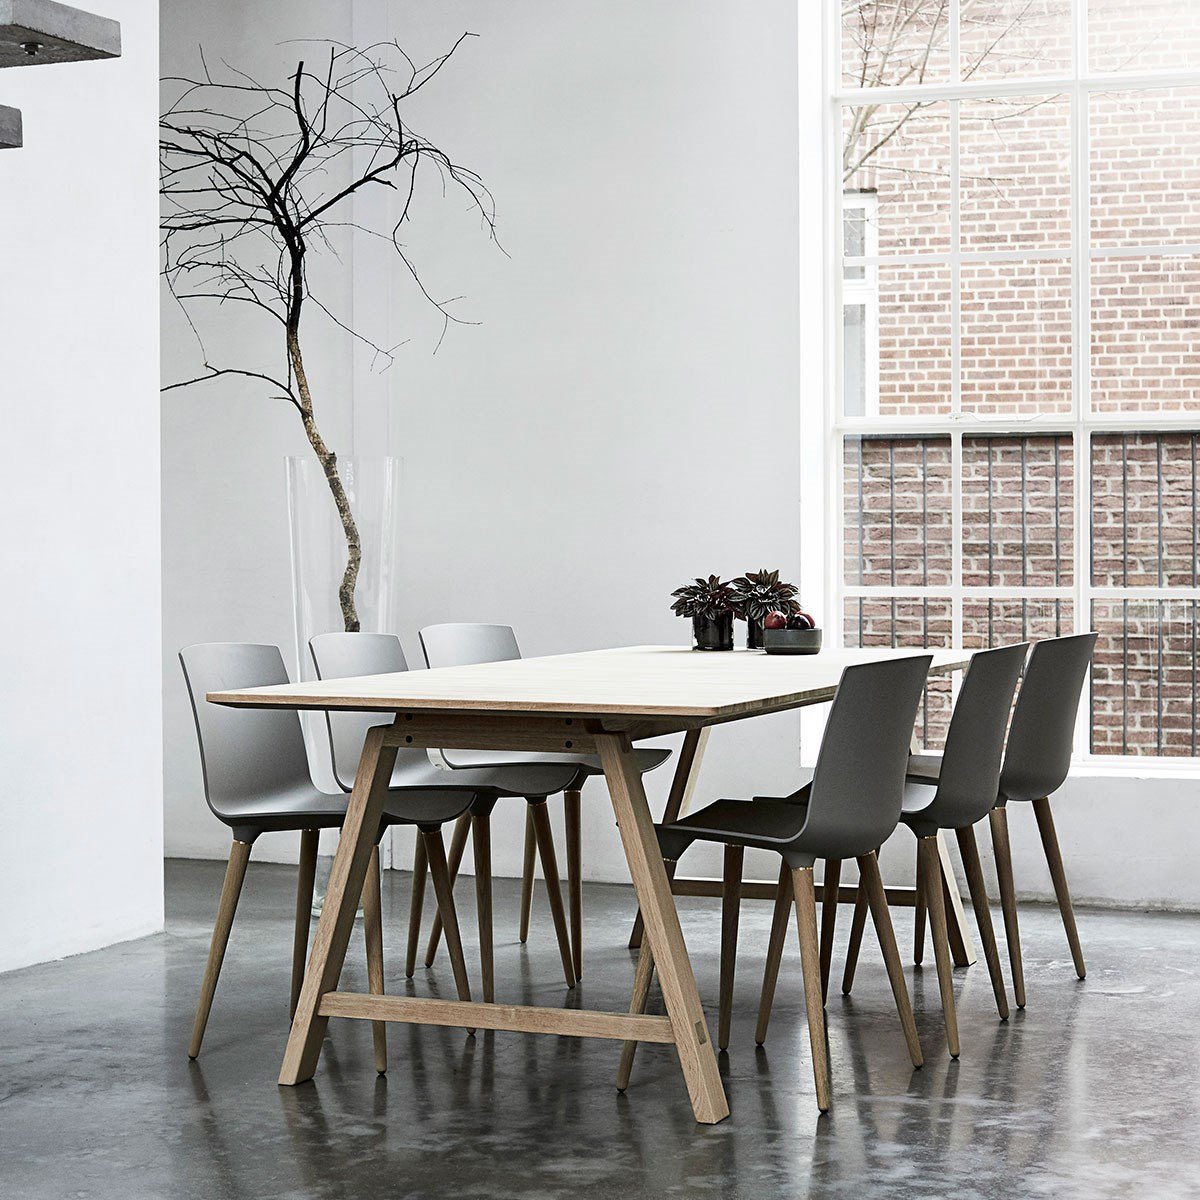 Table extensible des meubles Andersen T1, stratifié blanc, chêne savonned, 220 cm